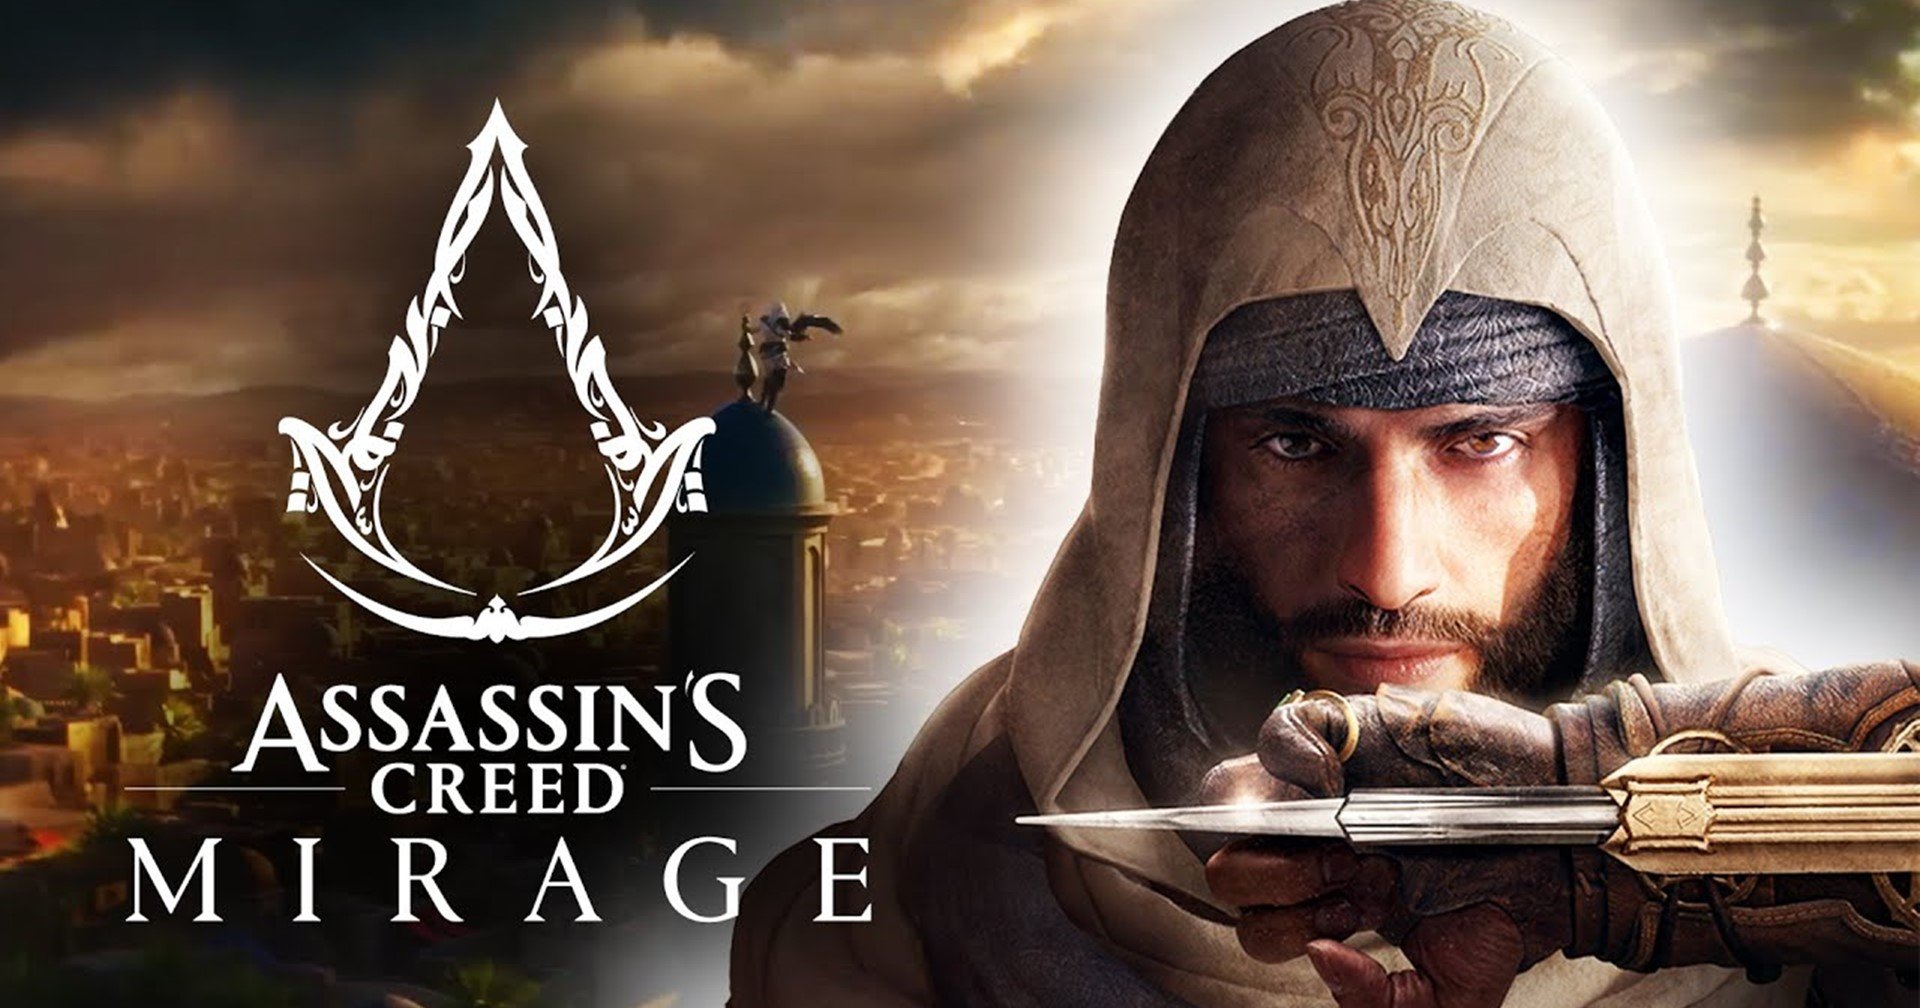 ผู้สร้างระบุเกม Assassin’s Creed Mirage จะย้อนกลับไปสู่รากเหง้าของต้นฉบับ